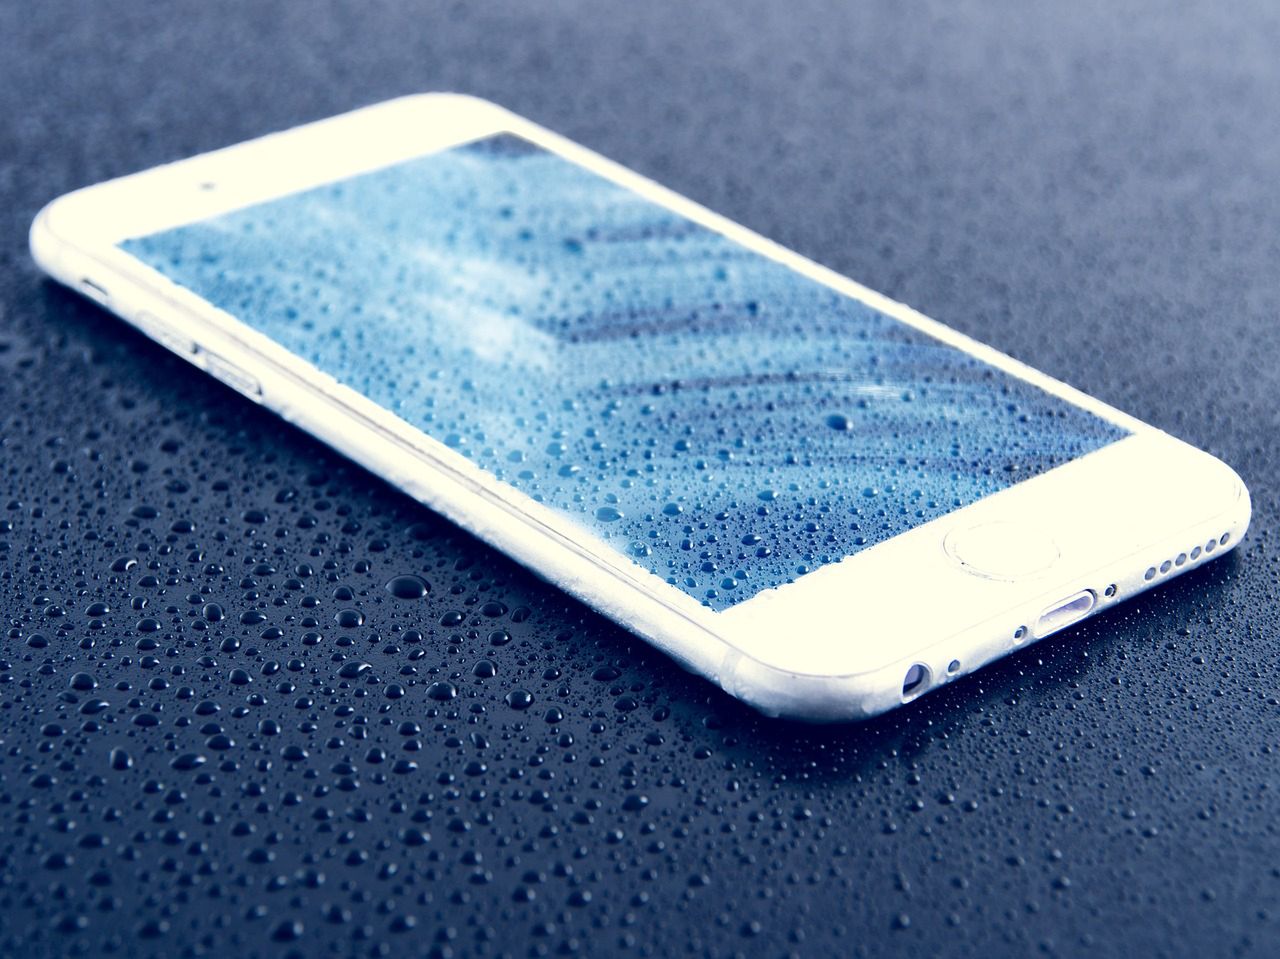 Islandia: iPhone z wideo upadku z samolotu znaleziony po 13 miesiącach. Nagranie przetrwało [WIDEO]